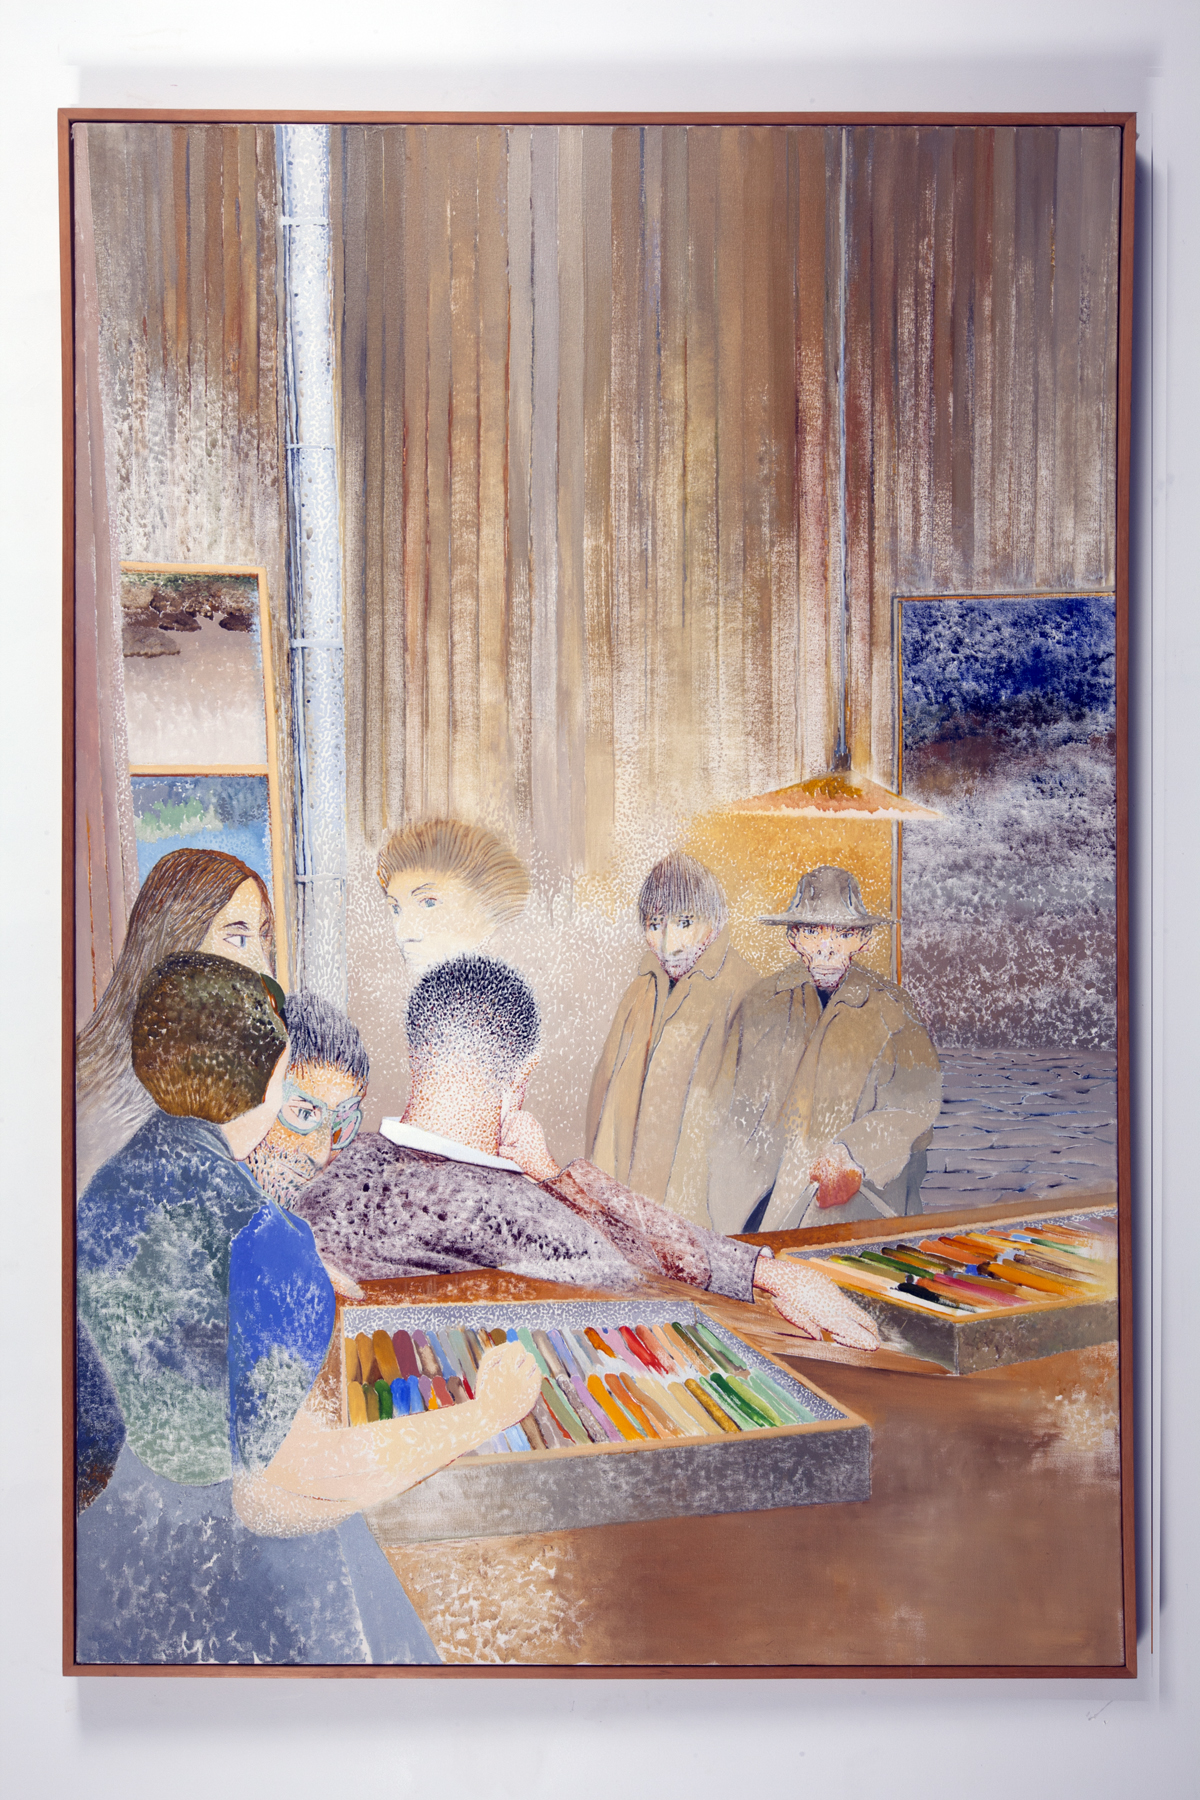 Encounter at the Maison du Pastel (1983)